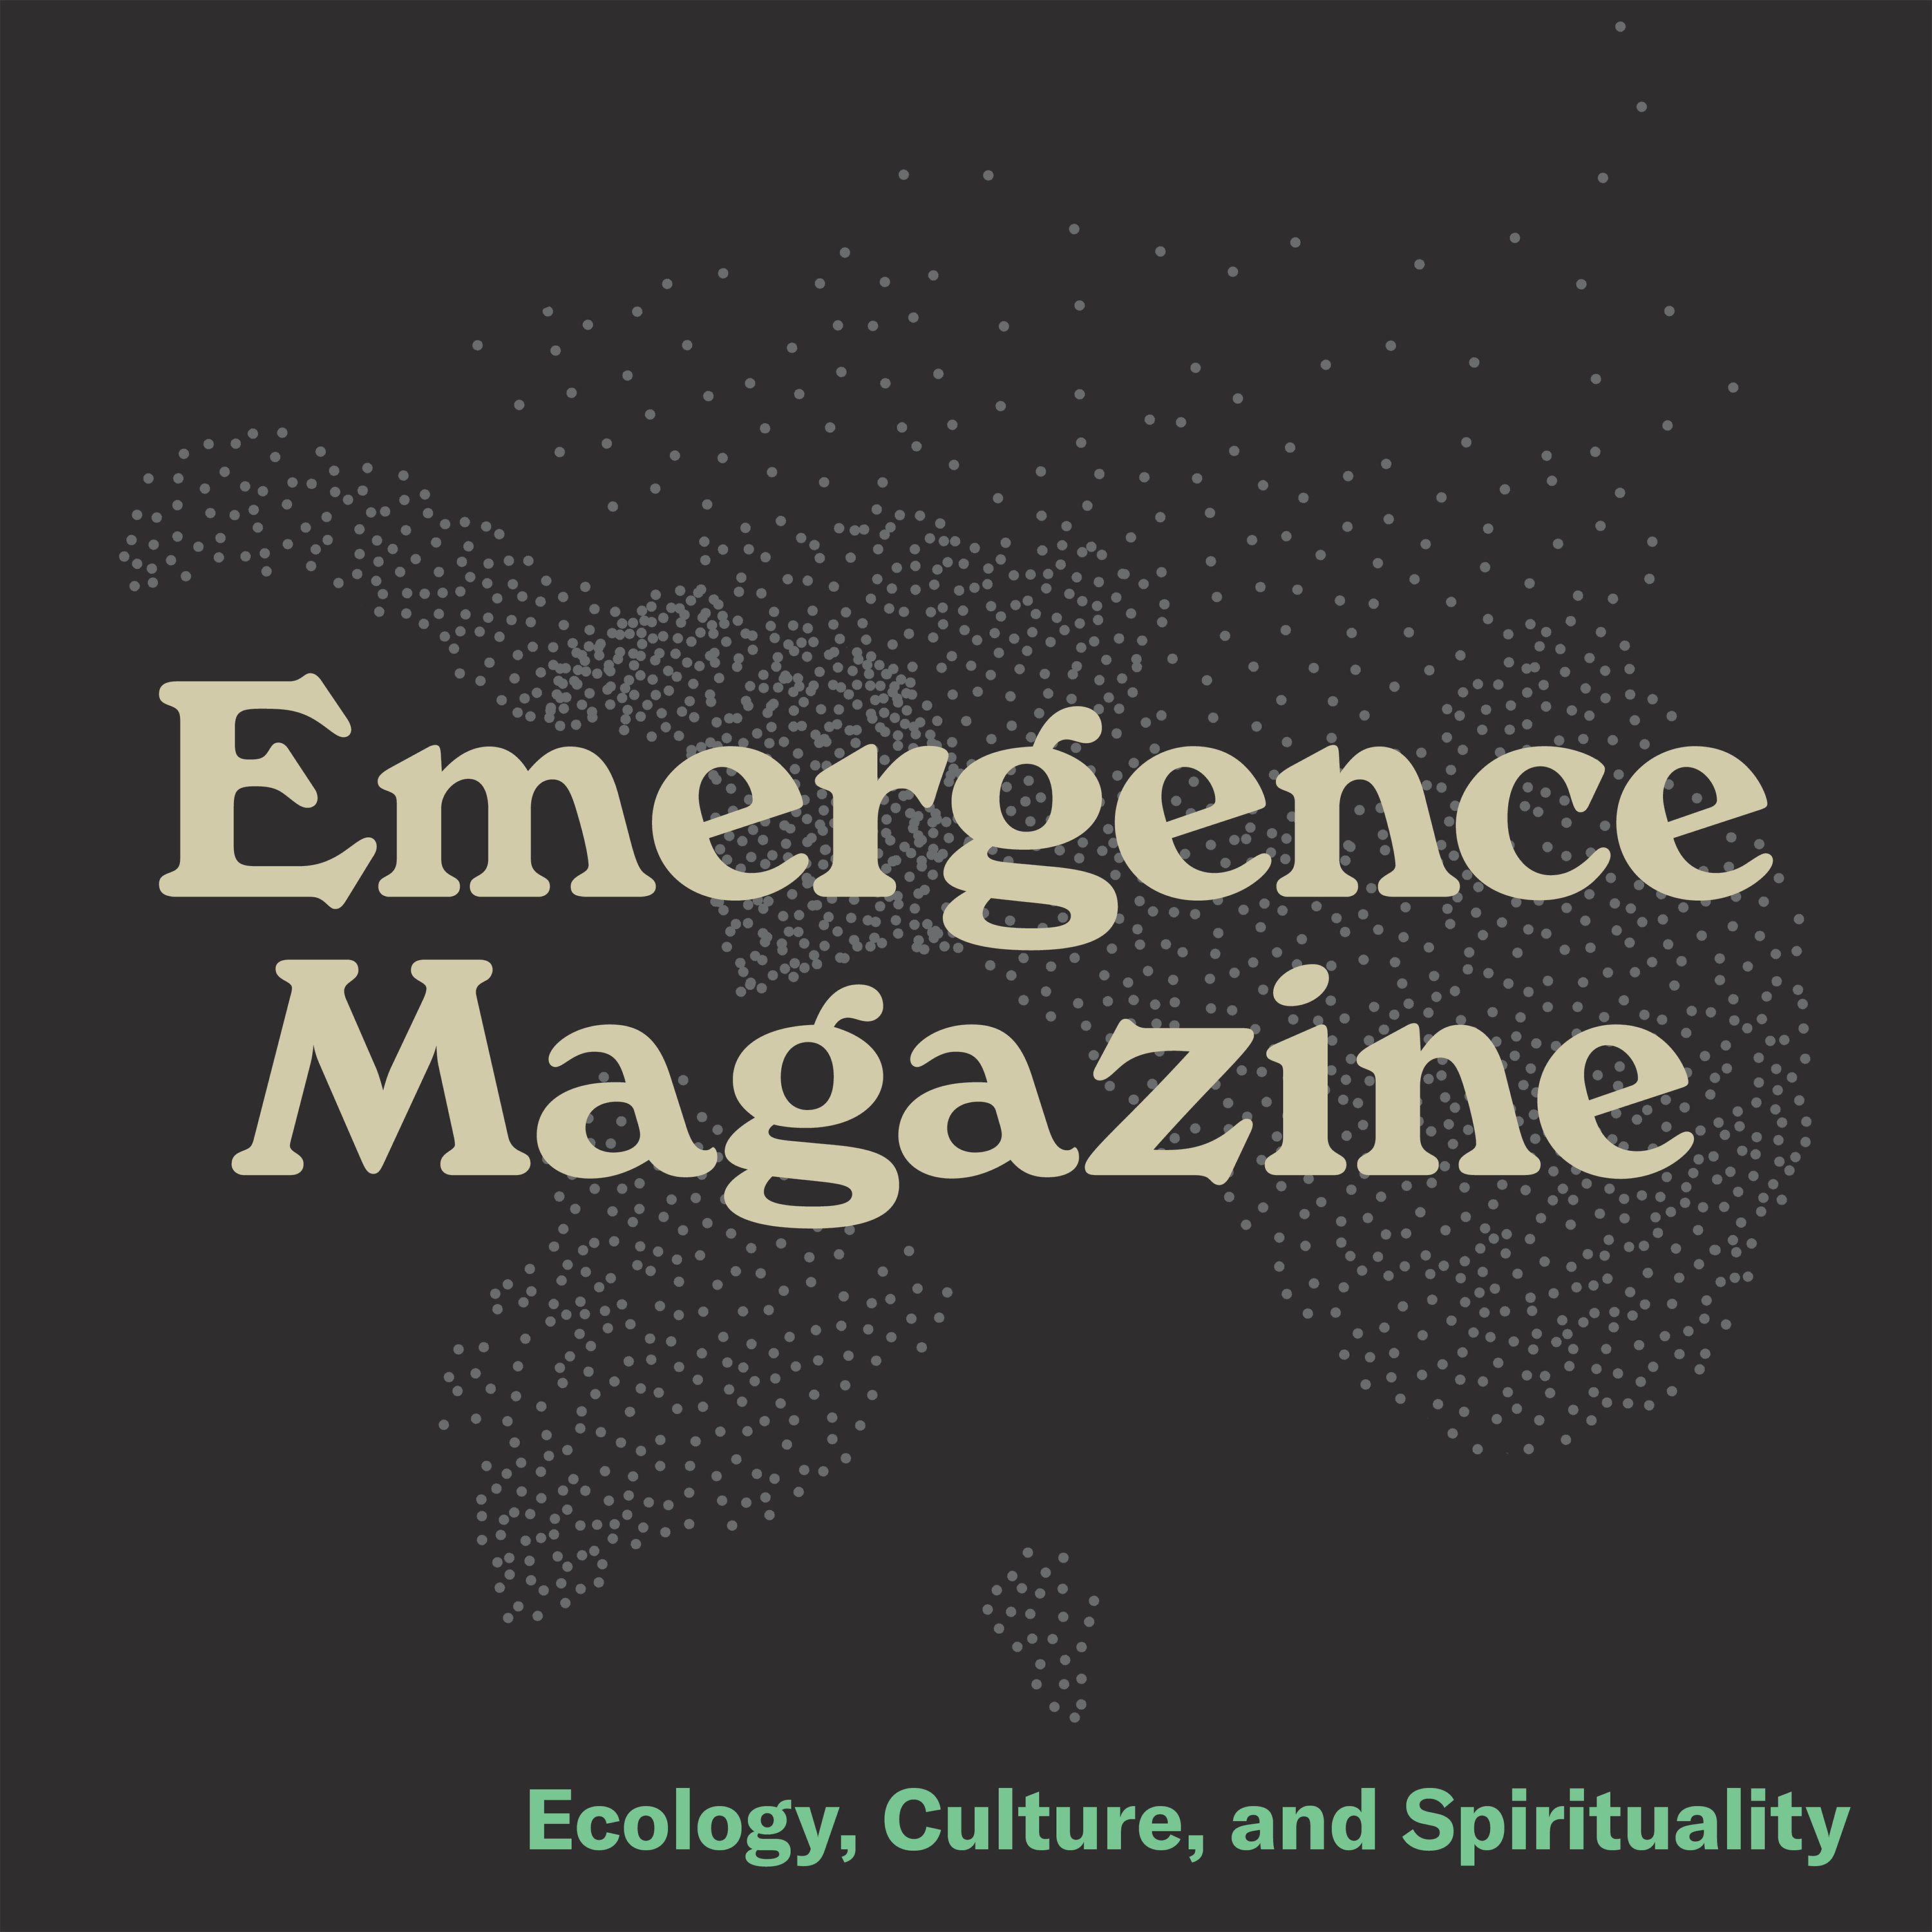 Emergence Magazine Podcast podcast show image